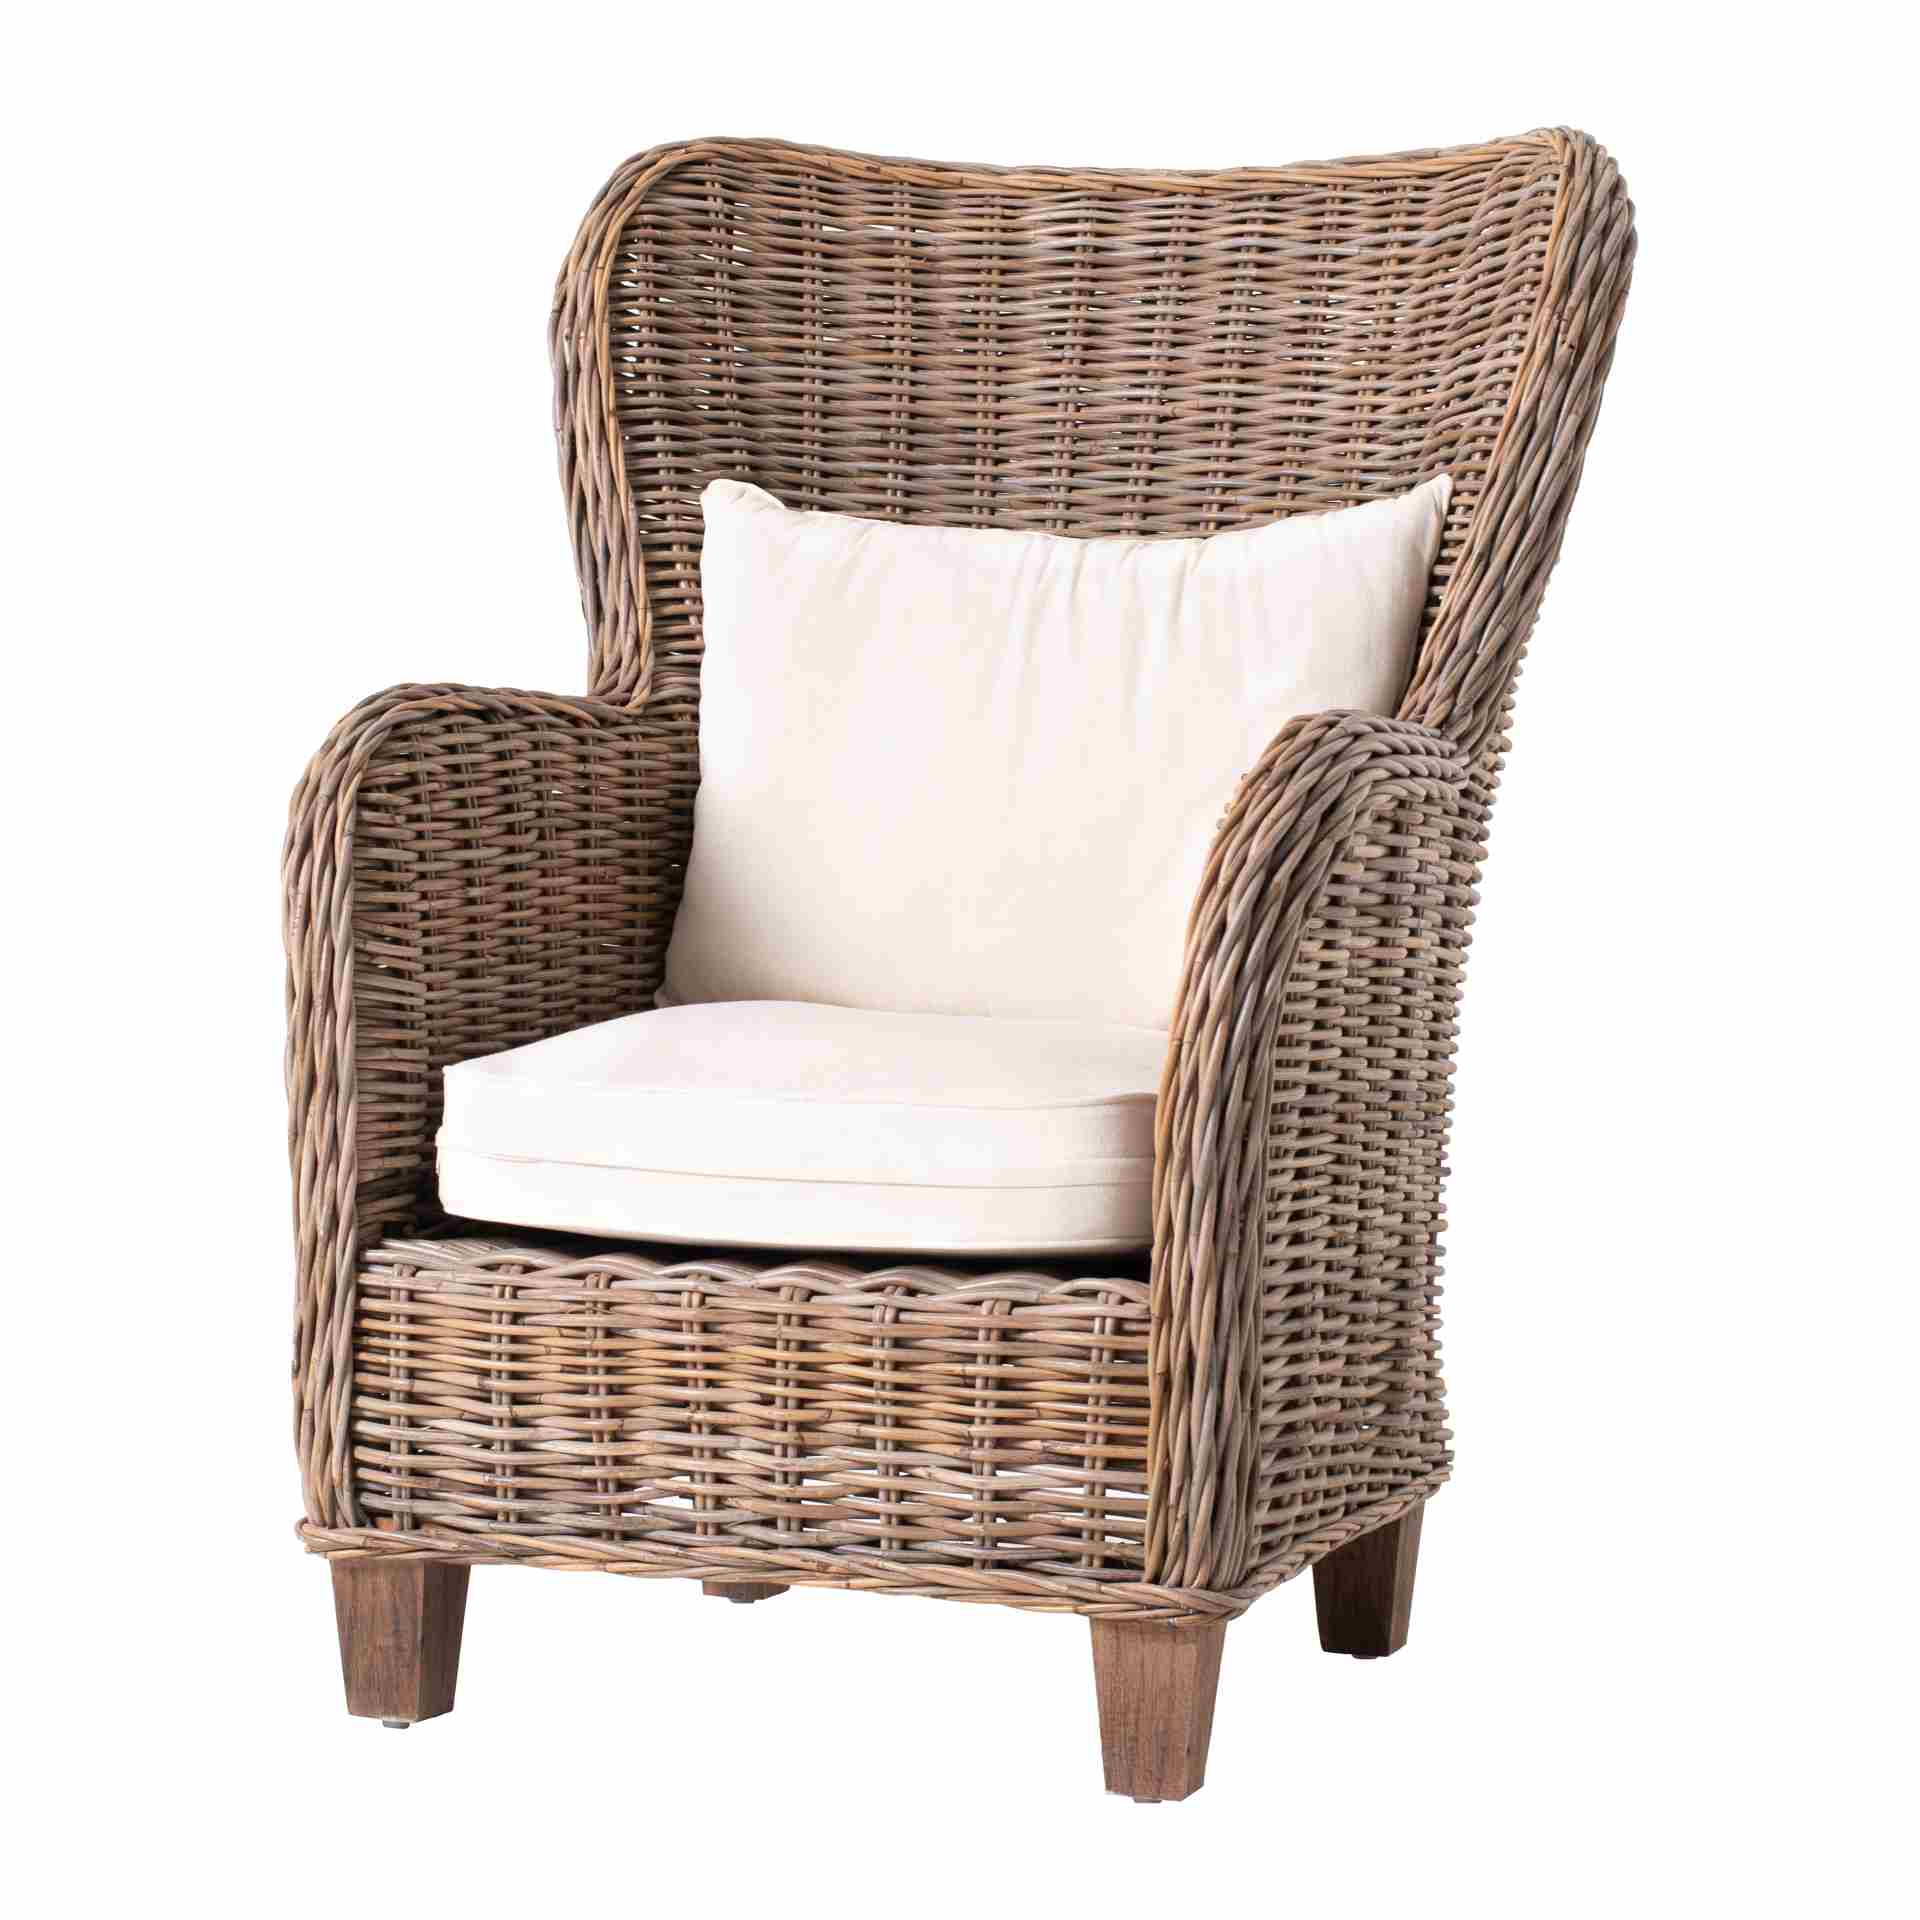 Der Armlehnstuhl King überzeugt mit seinem Landhaus Stil. Gefertigt wurde er aus Kabu Rattan, welches einen natürlichen Farbton besitzt. Der Stuhl verfügt über eine Armlehne. Die Sitzhöhe beträgt beträgt 35 cm.